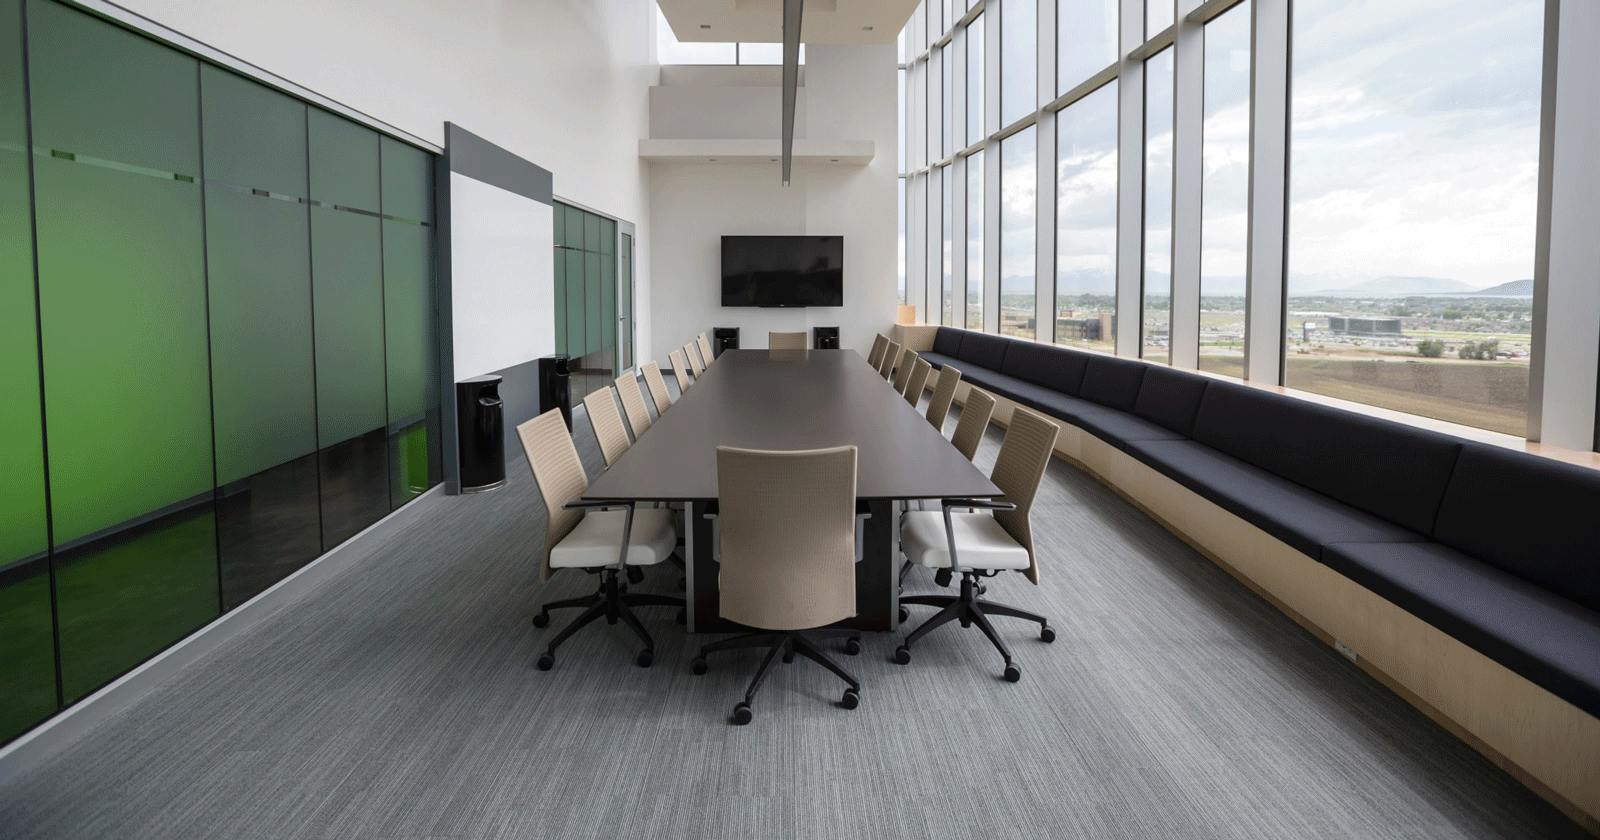 Office Meeting Room